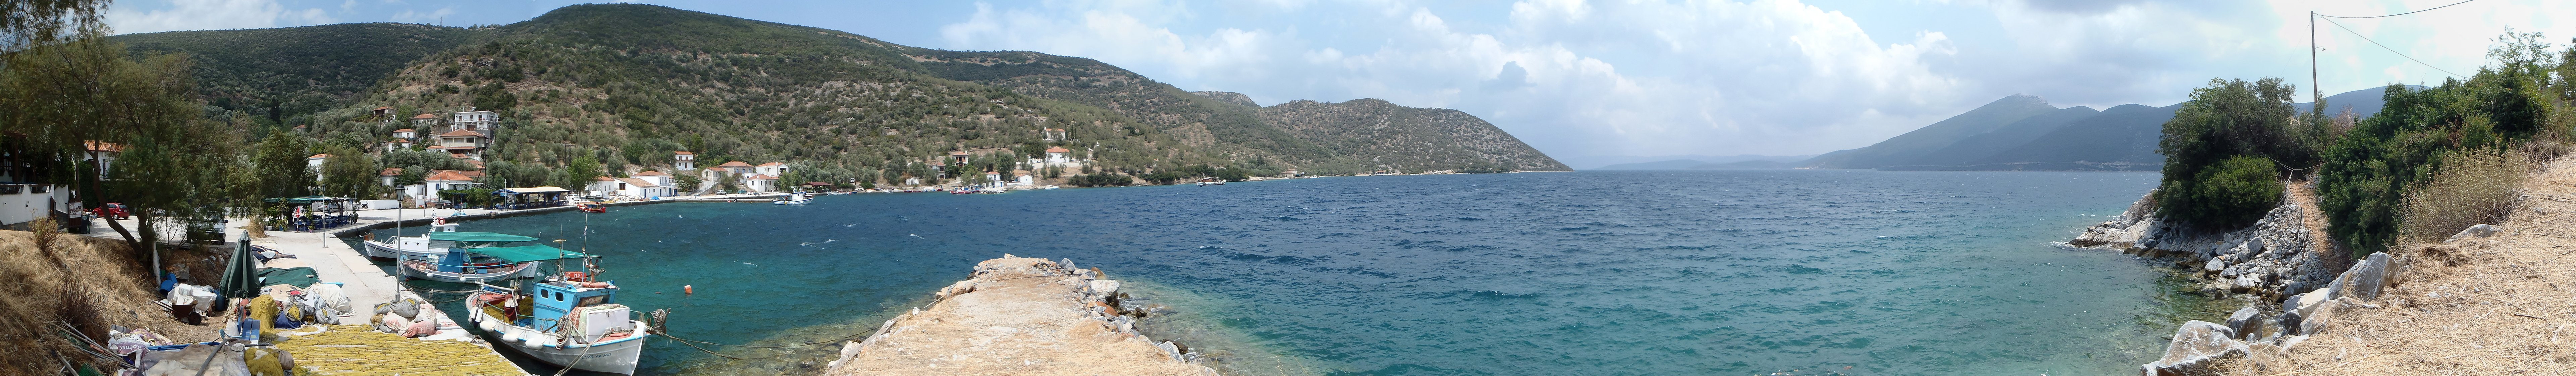 Greece, kotes, Pelion, sea